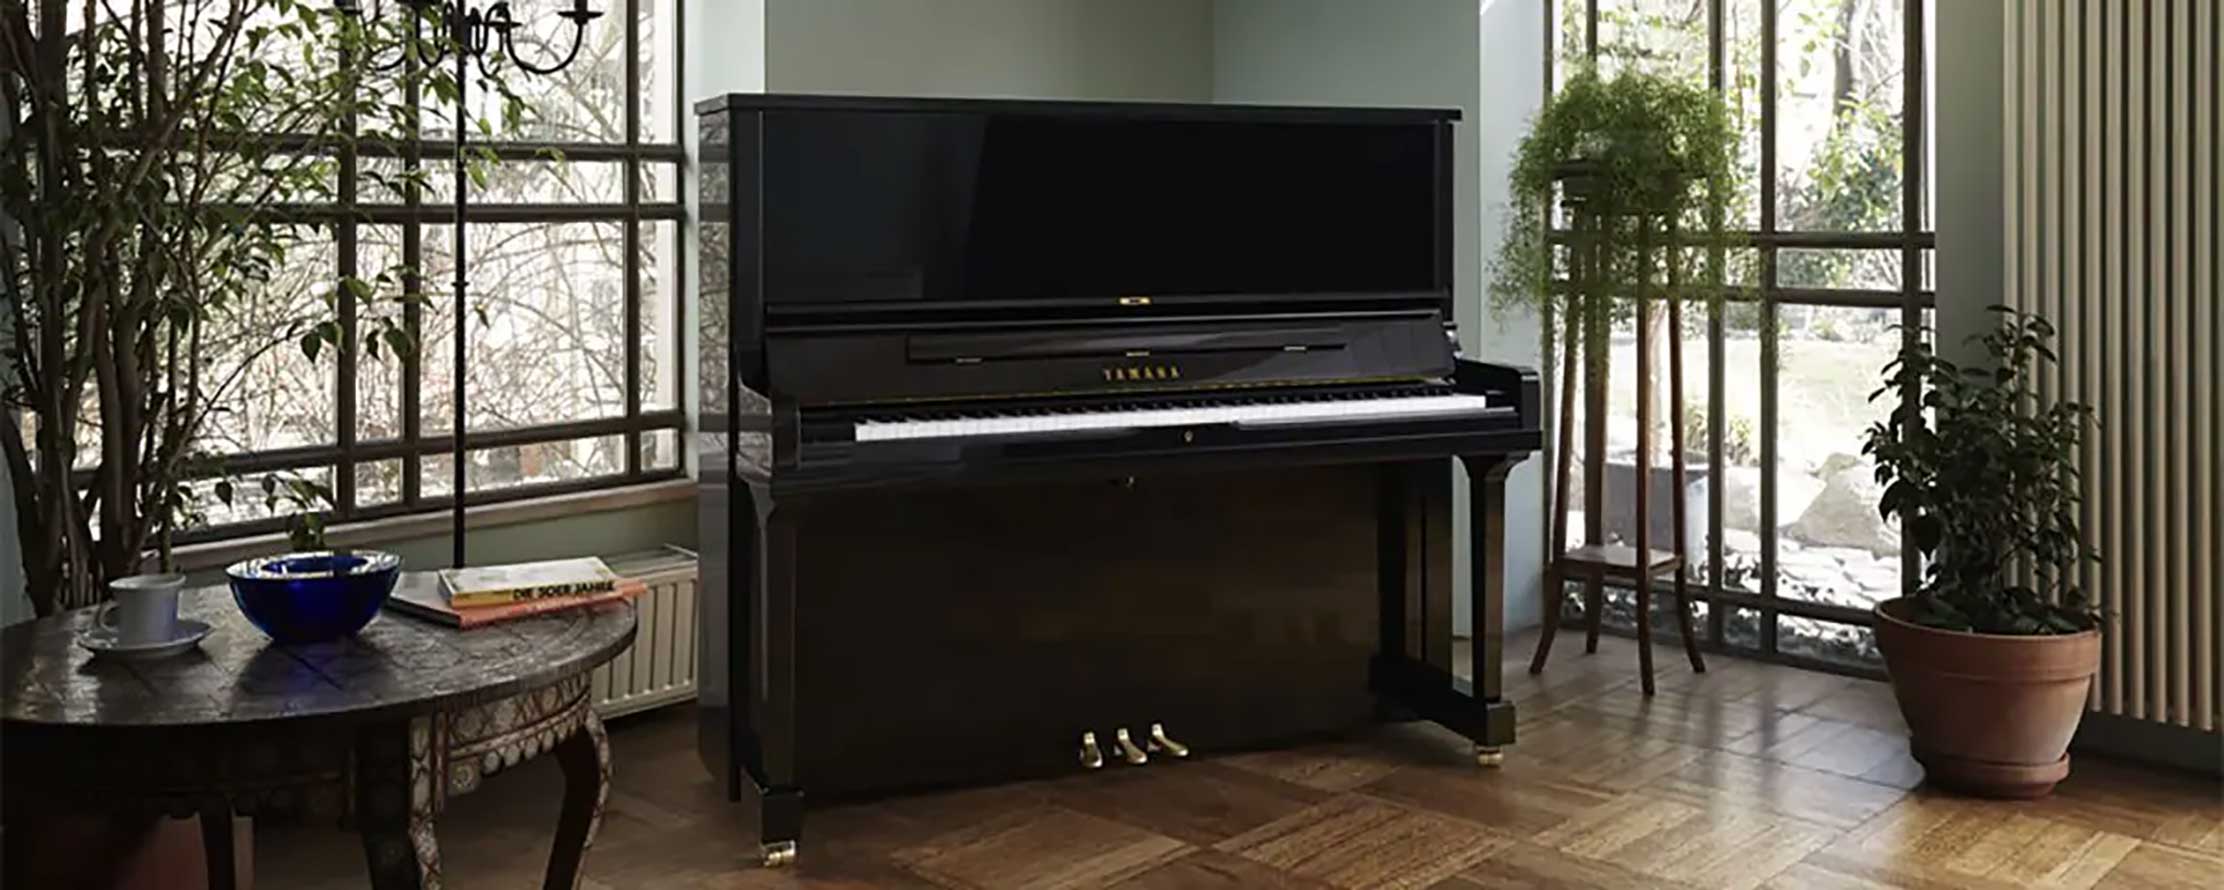 Yamaha SE132 Klavier in eklektischem Raum